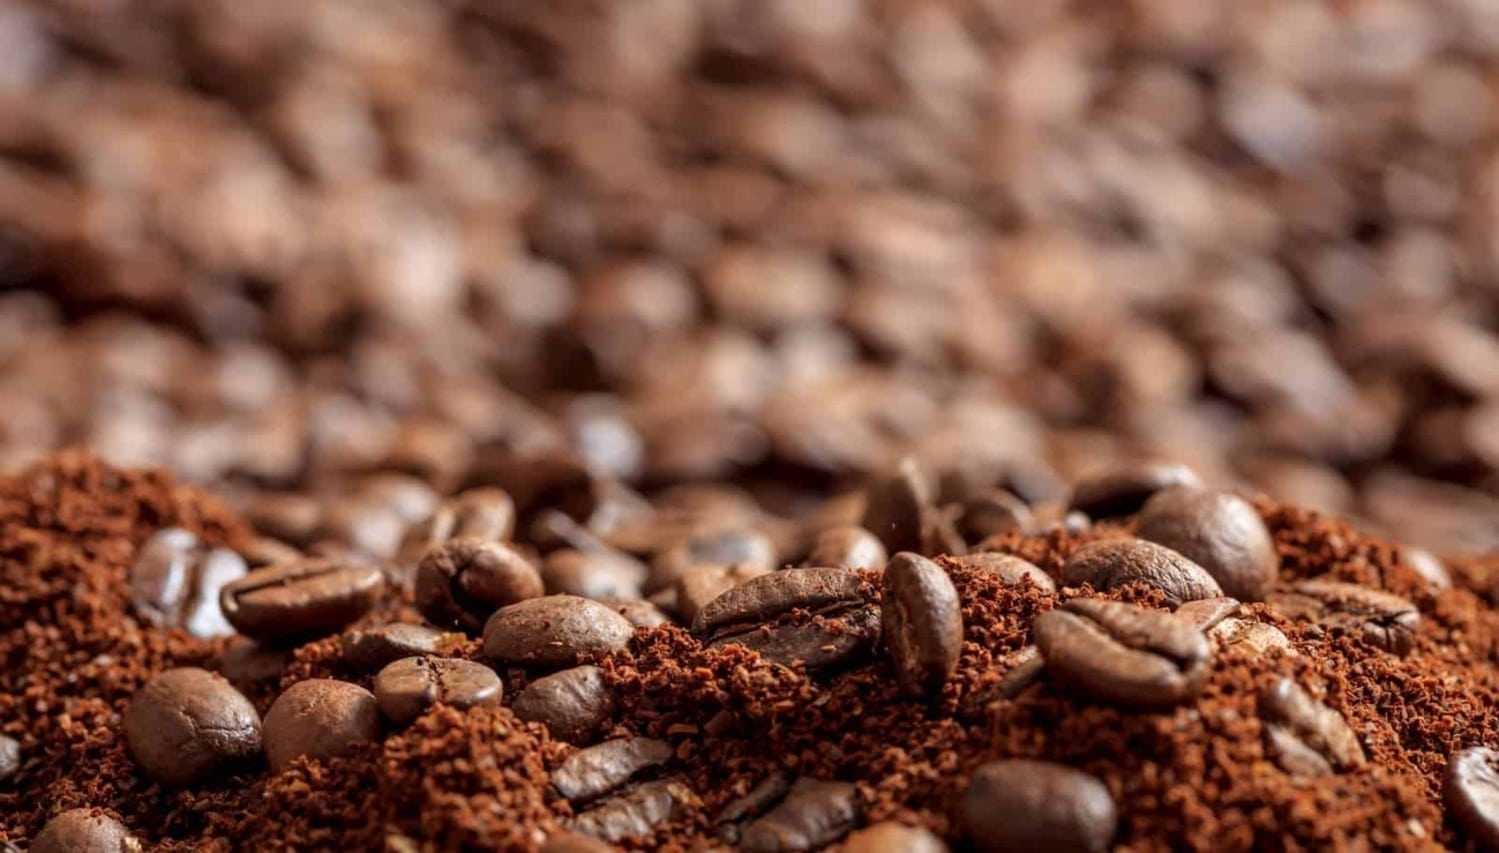 Café solúvel passará por análise de qualidade reconhecida internacionalmente, por meio de metodologia inédita criada no Brasil